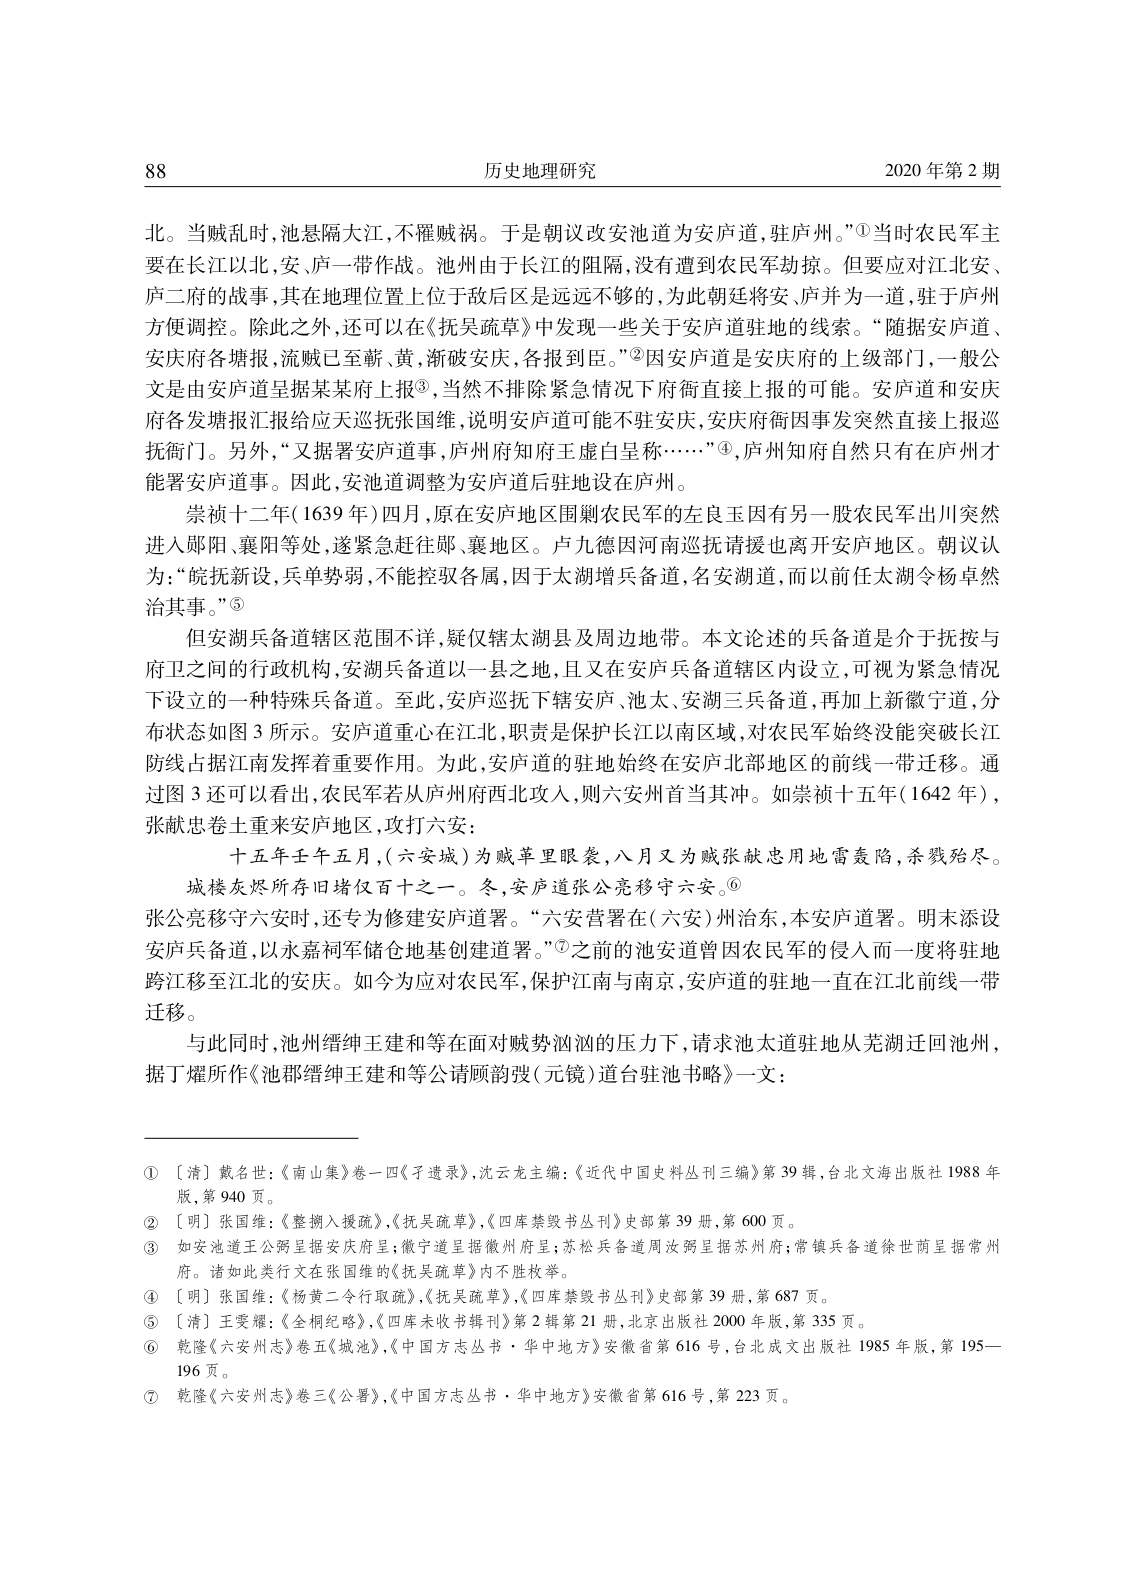 明代安庆、徽州地区兵备道分合演变考论_page-0017.jpg